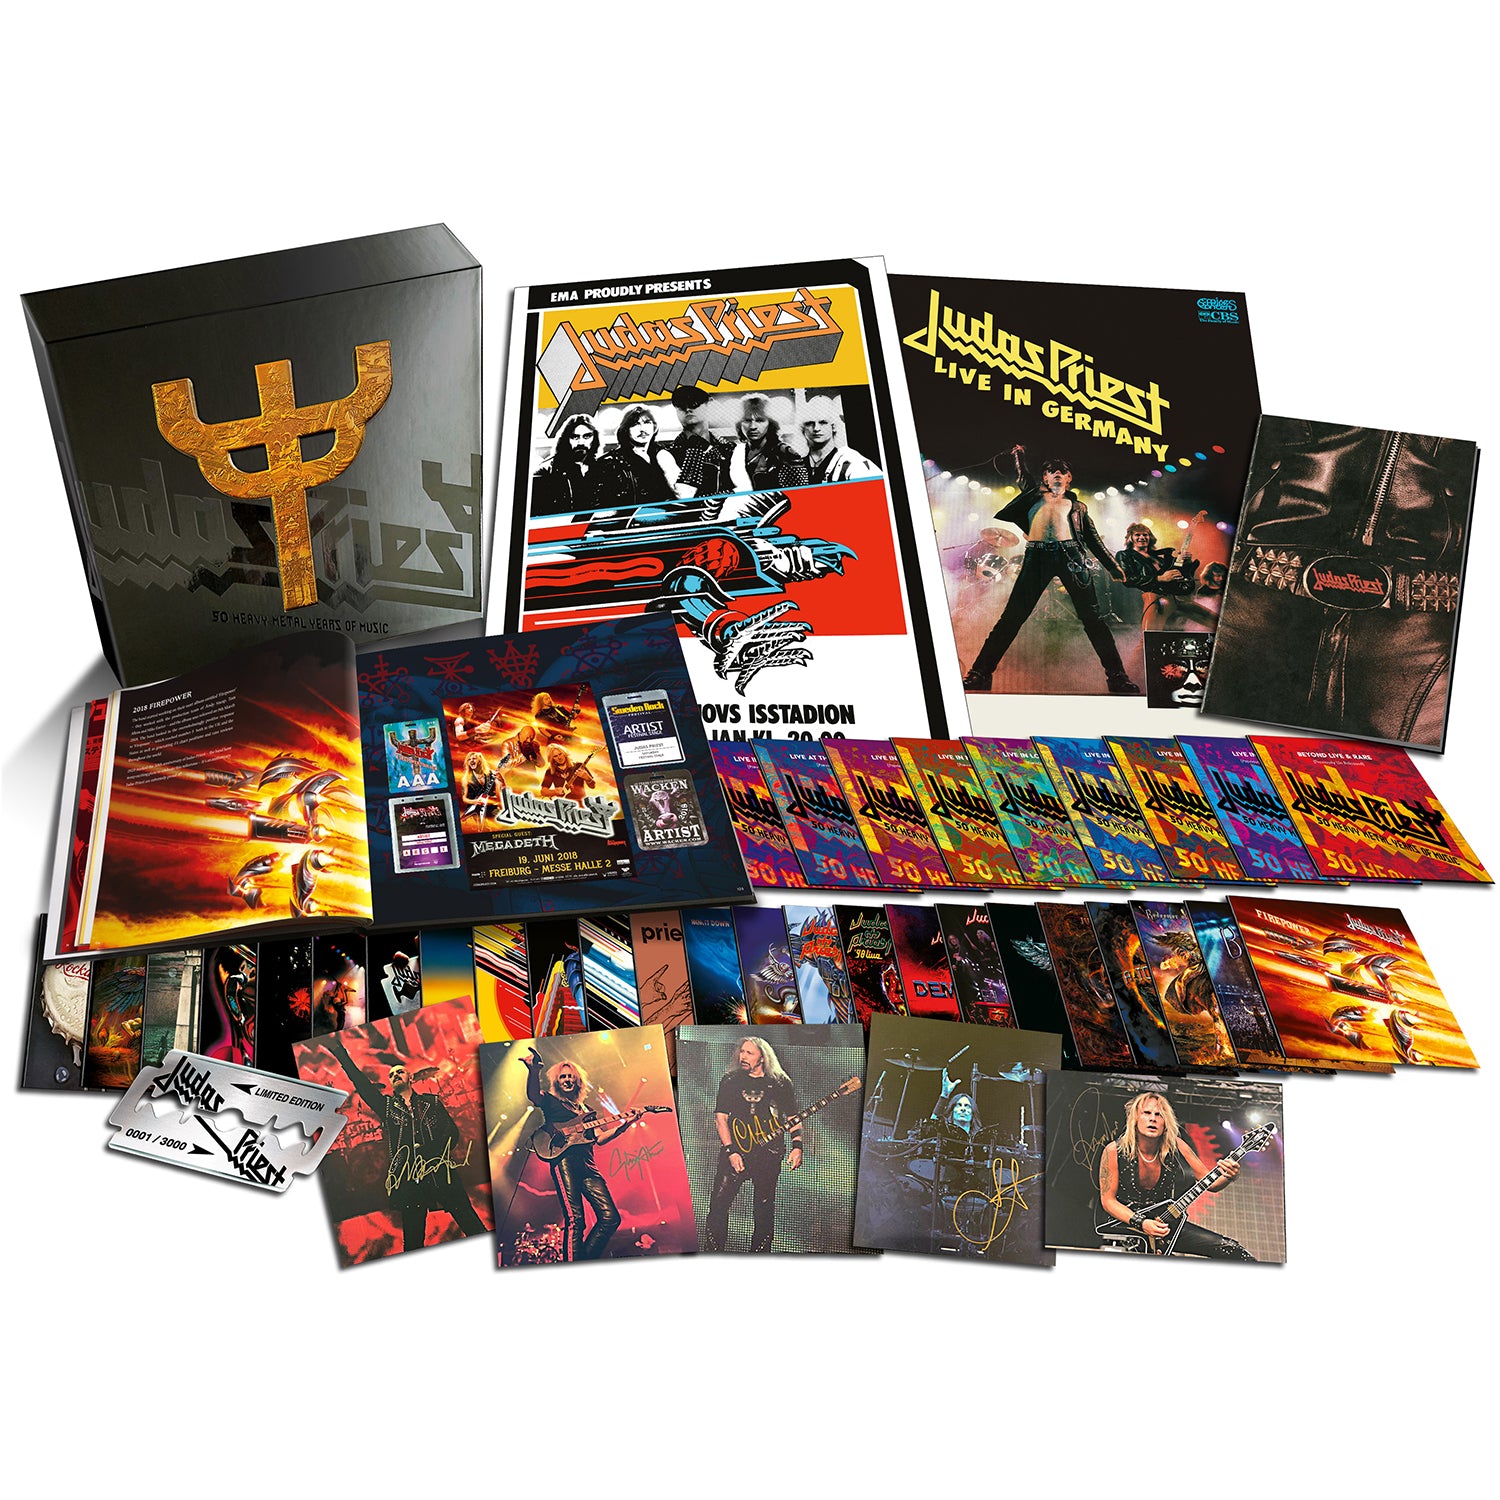 Judas Priest 50 Heavy Metal Years of Music!